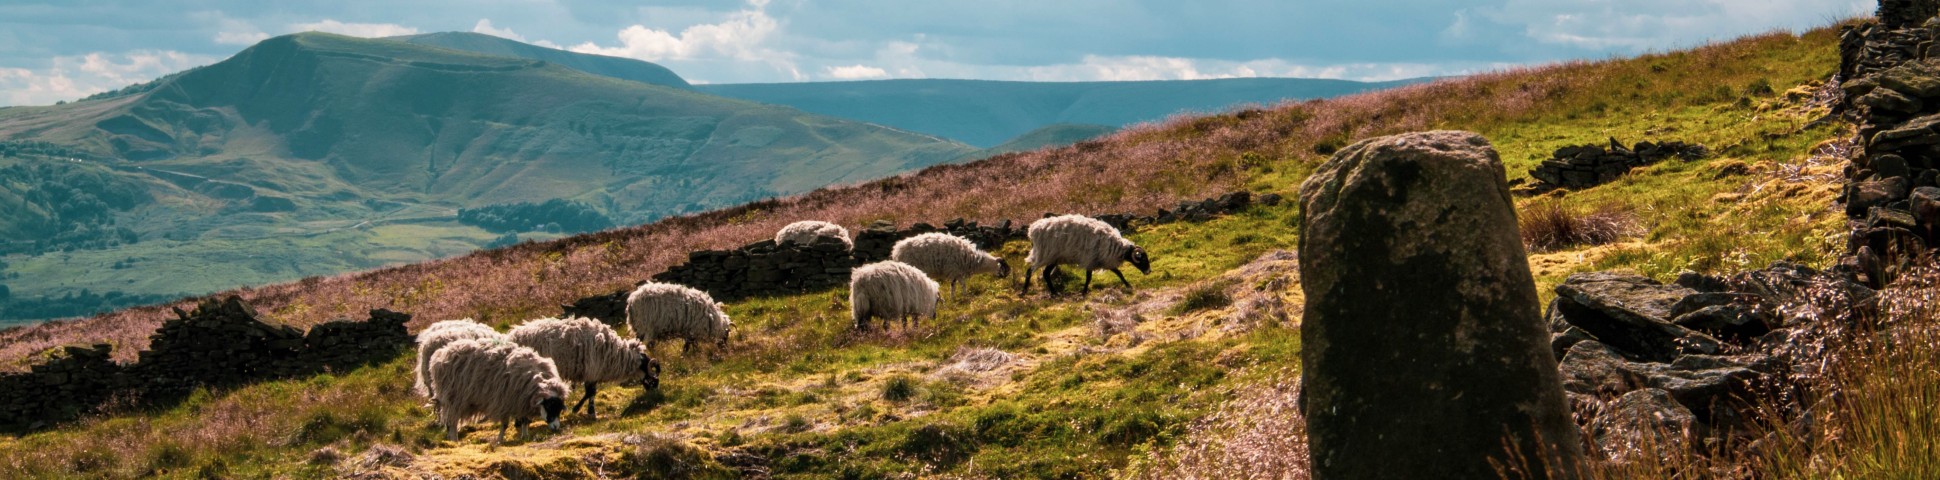 Herd of Sheep in Peak District